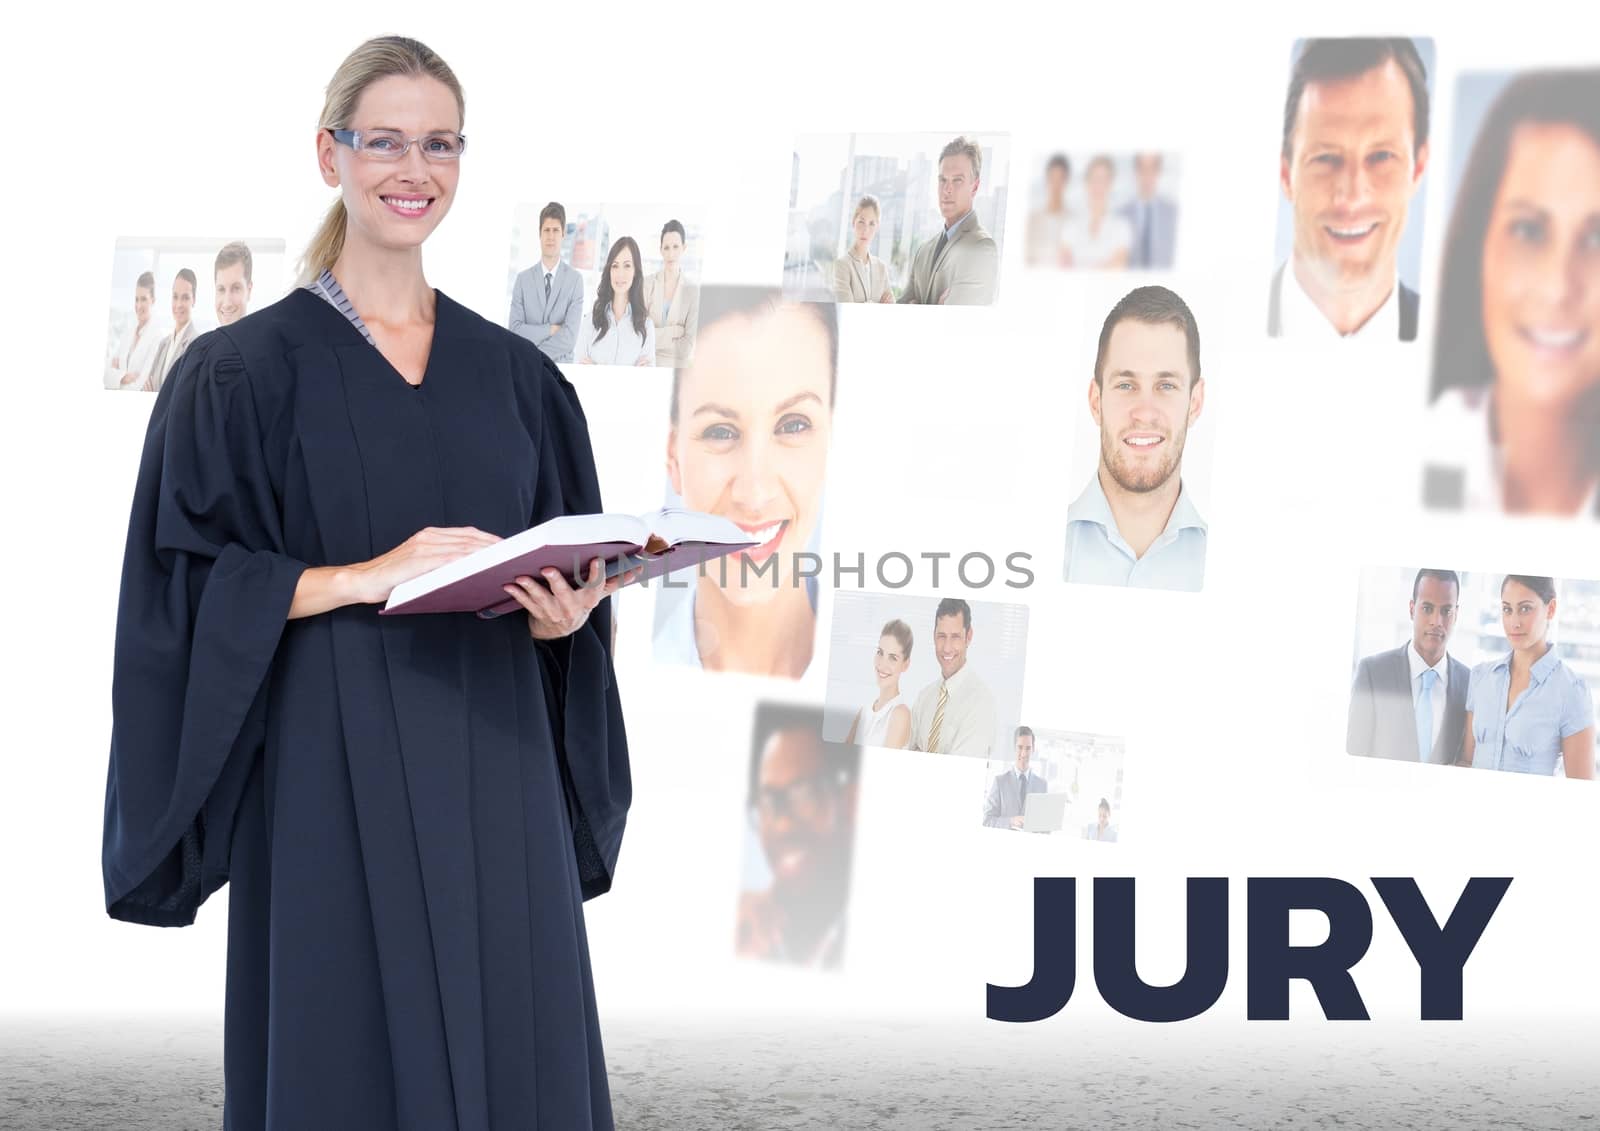 Judge in front of Jury people by Wavebreakmedia